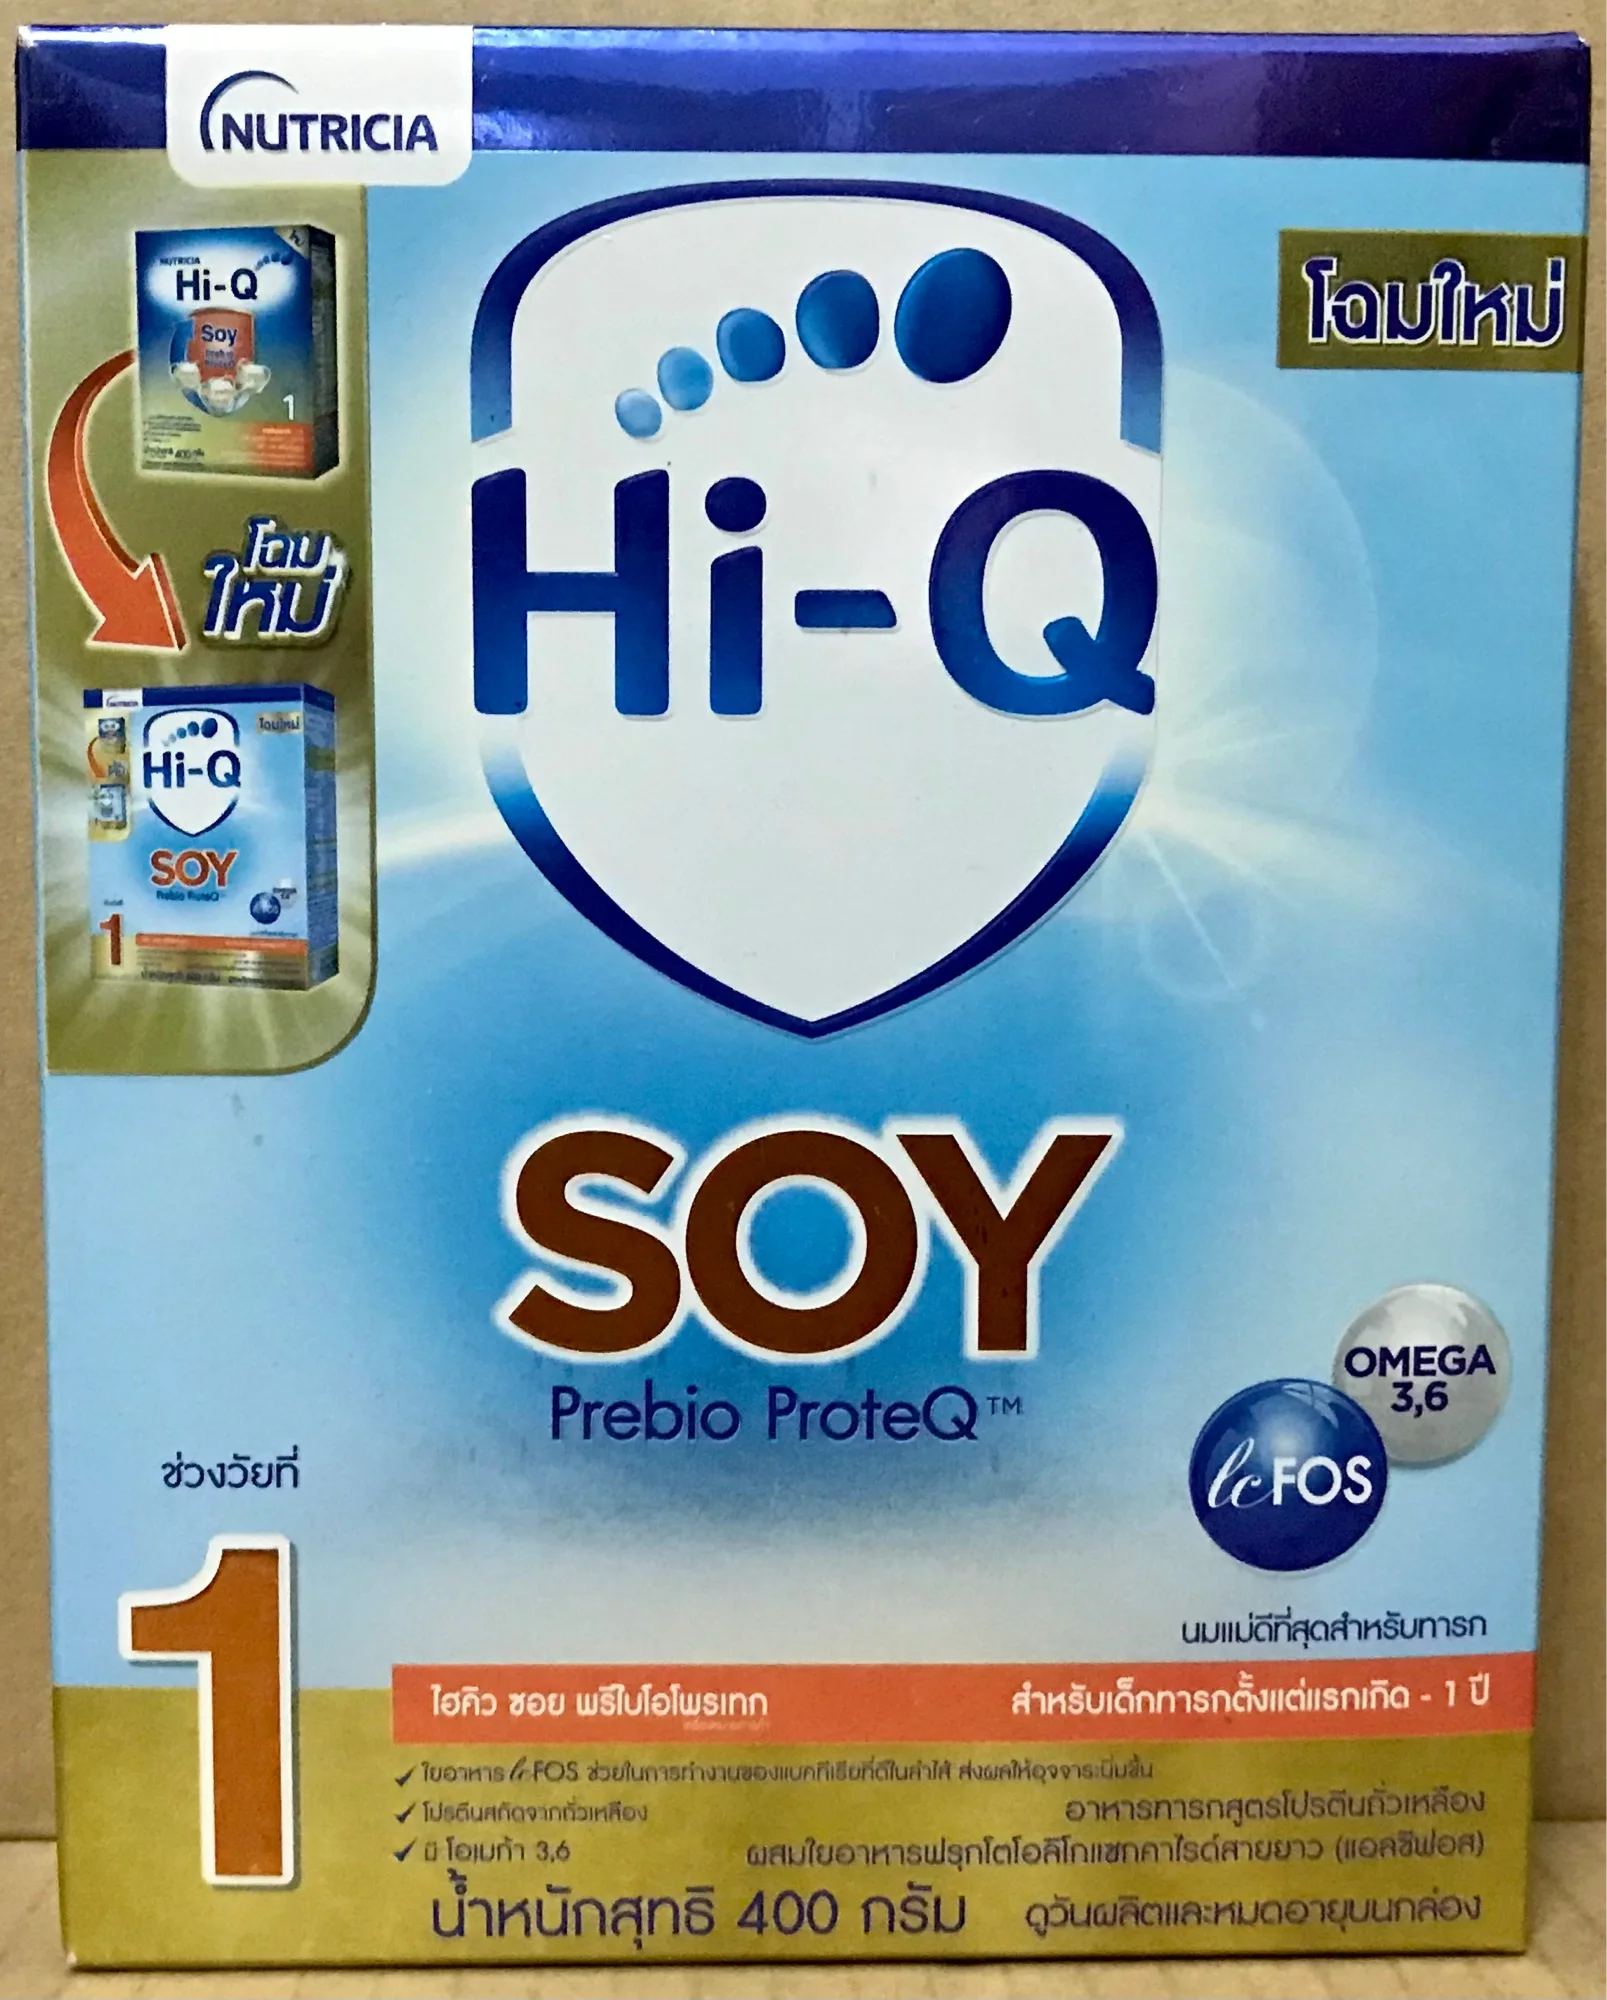 นมผง ไฮคิว ซอย Hi-Q SOY , 400g x 6 กล่อง(Hi Q)